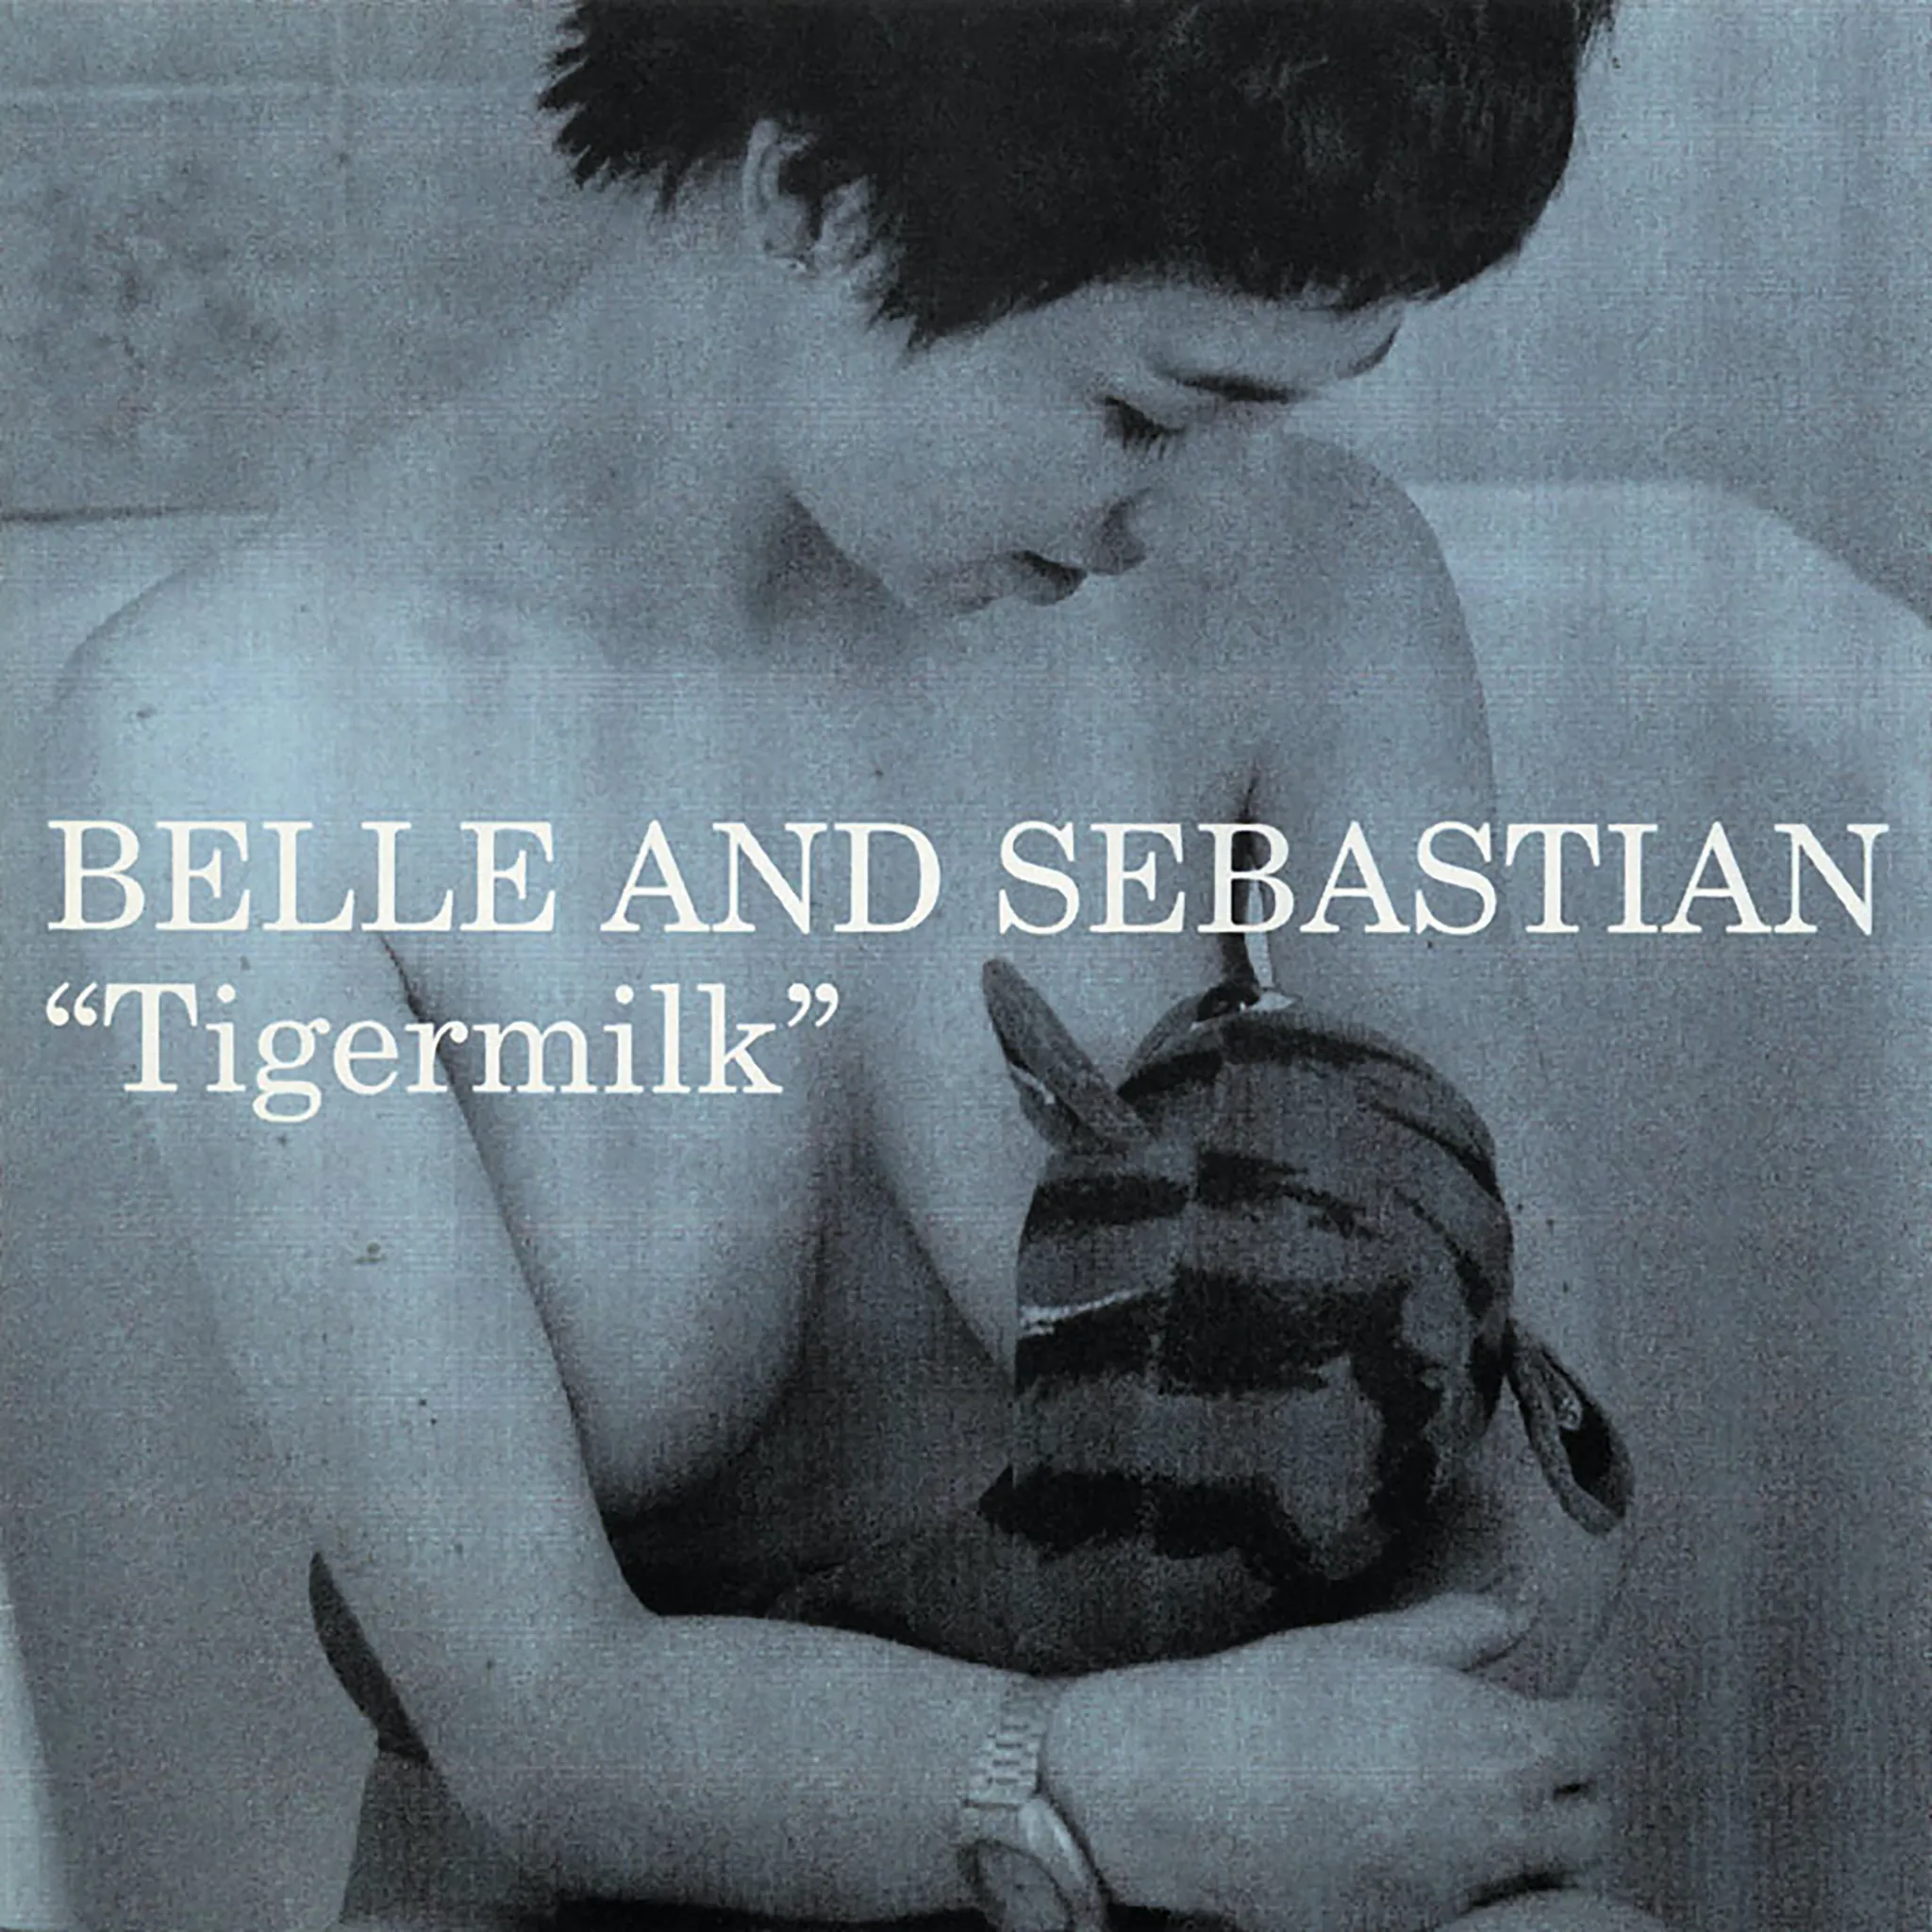 belle and sebastian tour uk